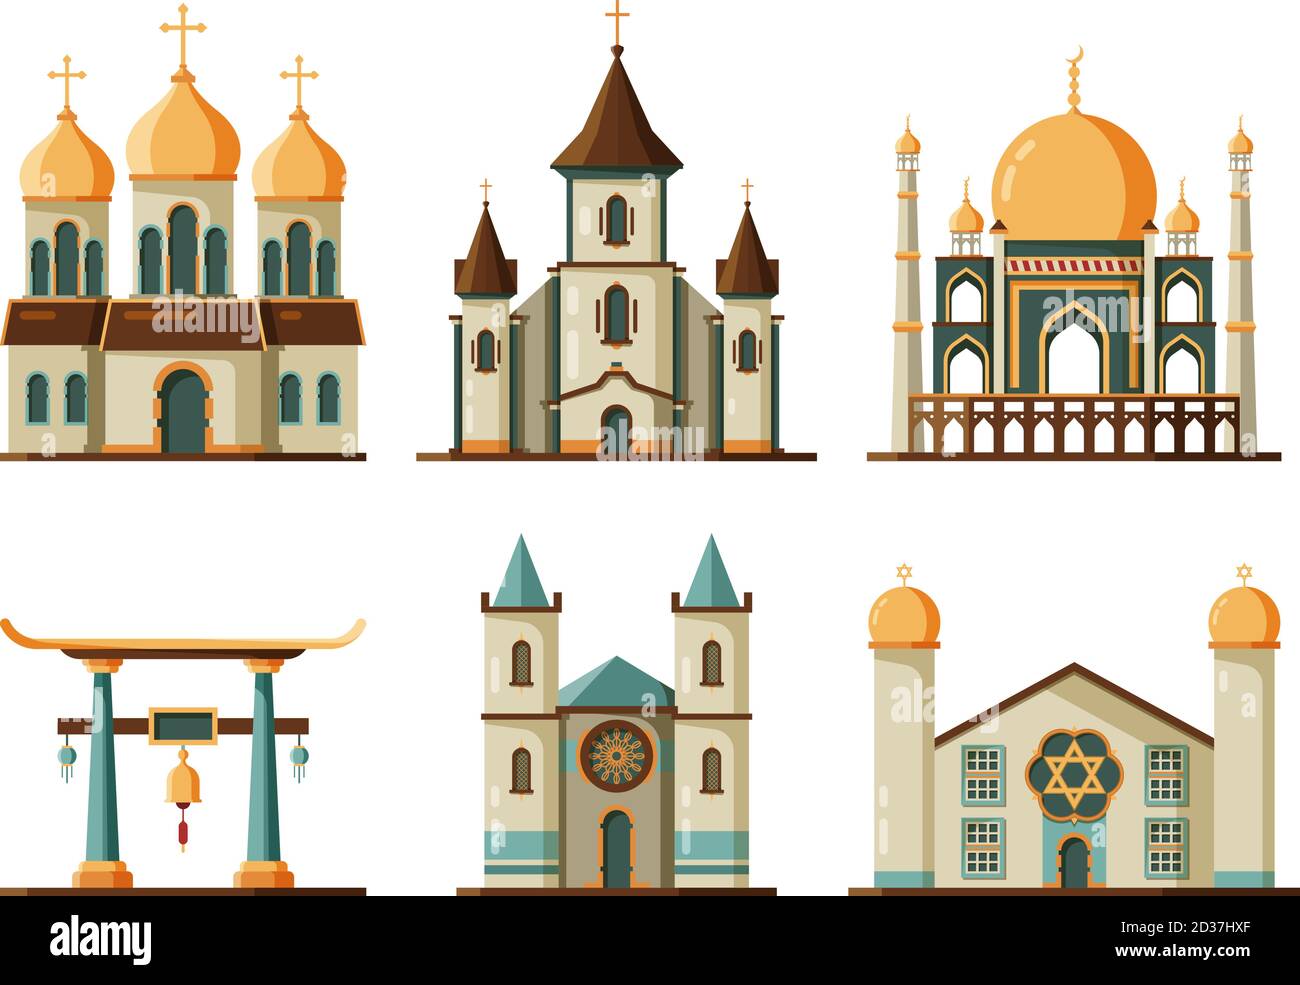 Religiöse Gebäude flach. Lutherische und christliche Kirche muslim Moschee architektonischen traditionellen Gebäuden Stock Vektor